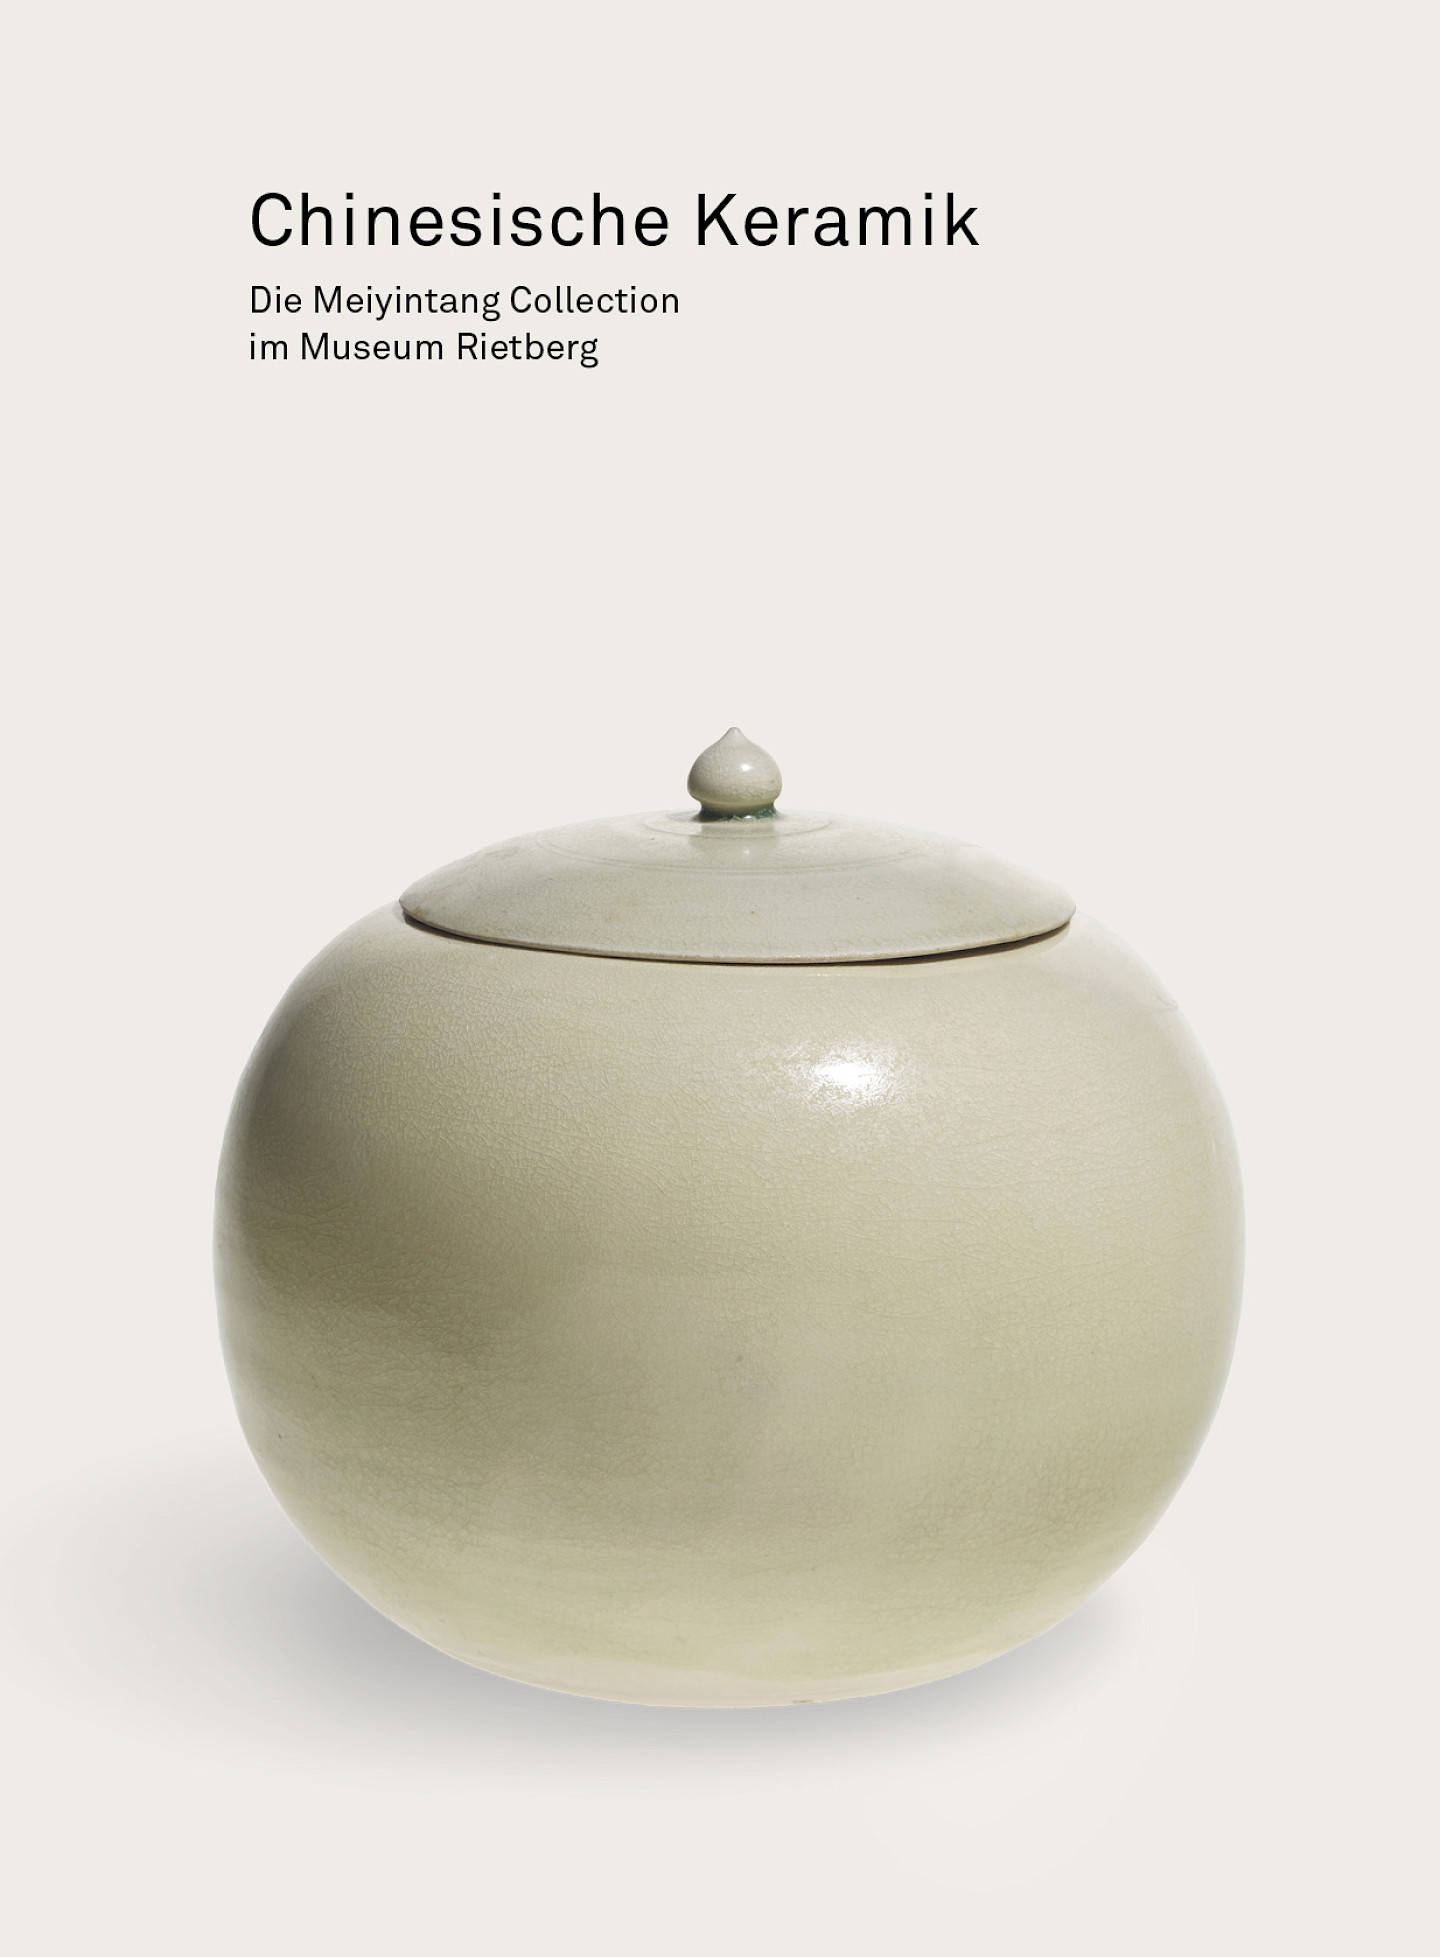 Buchvernissage: Meisterwerke der chinesischen Keramik